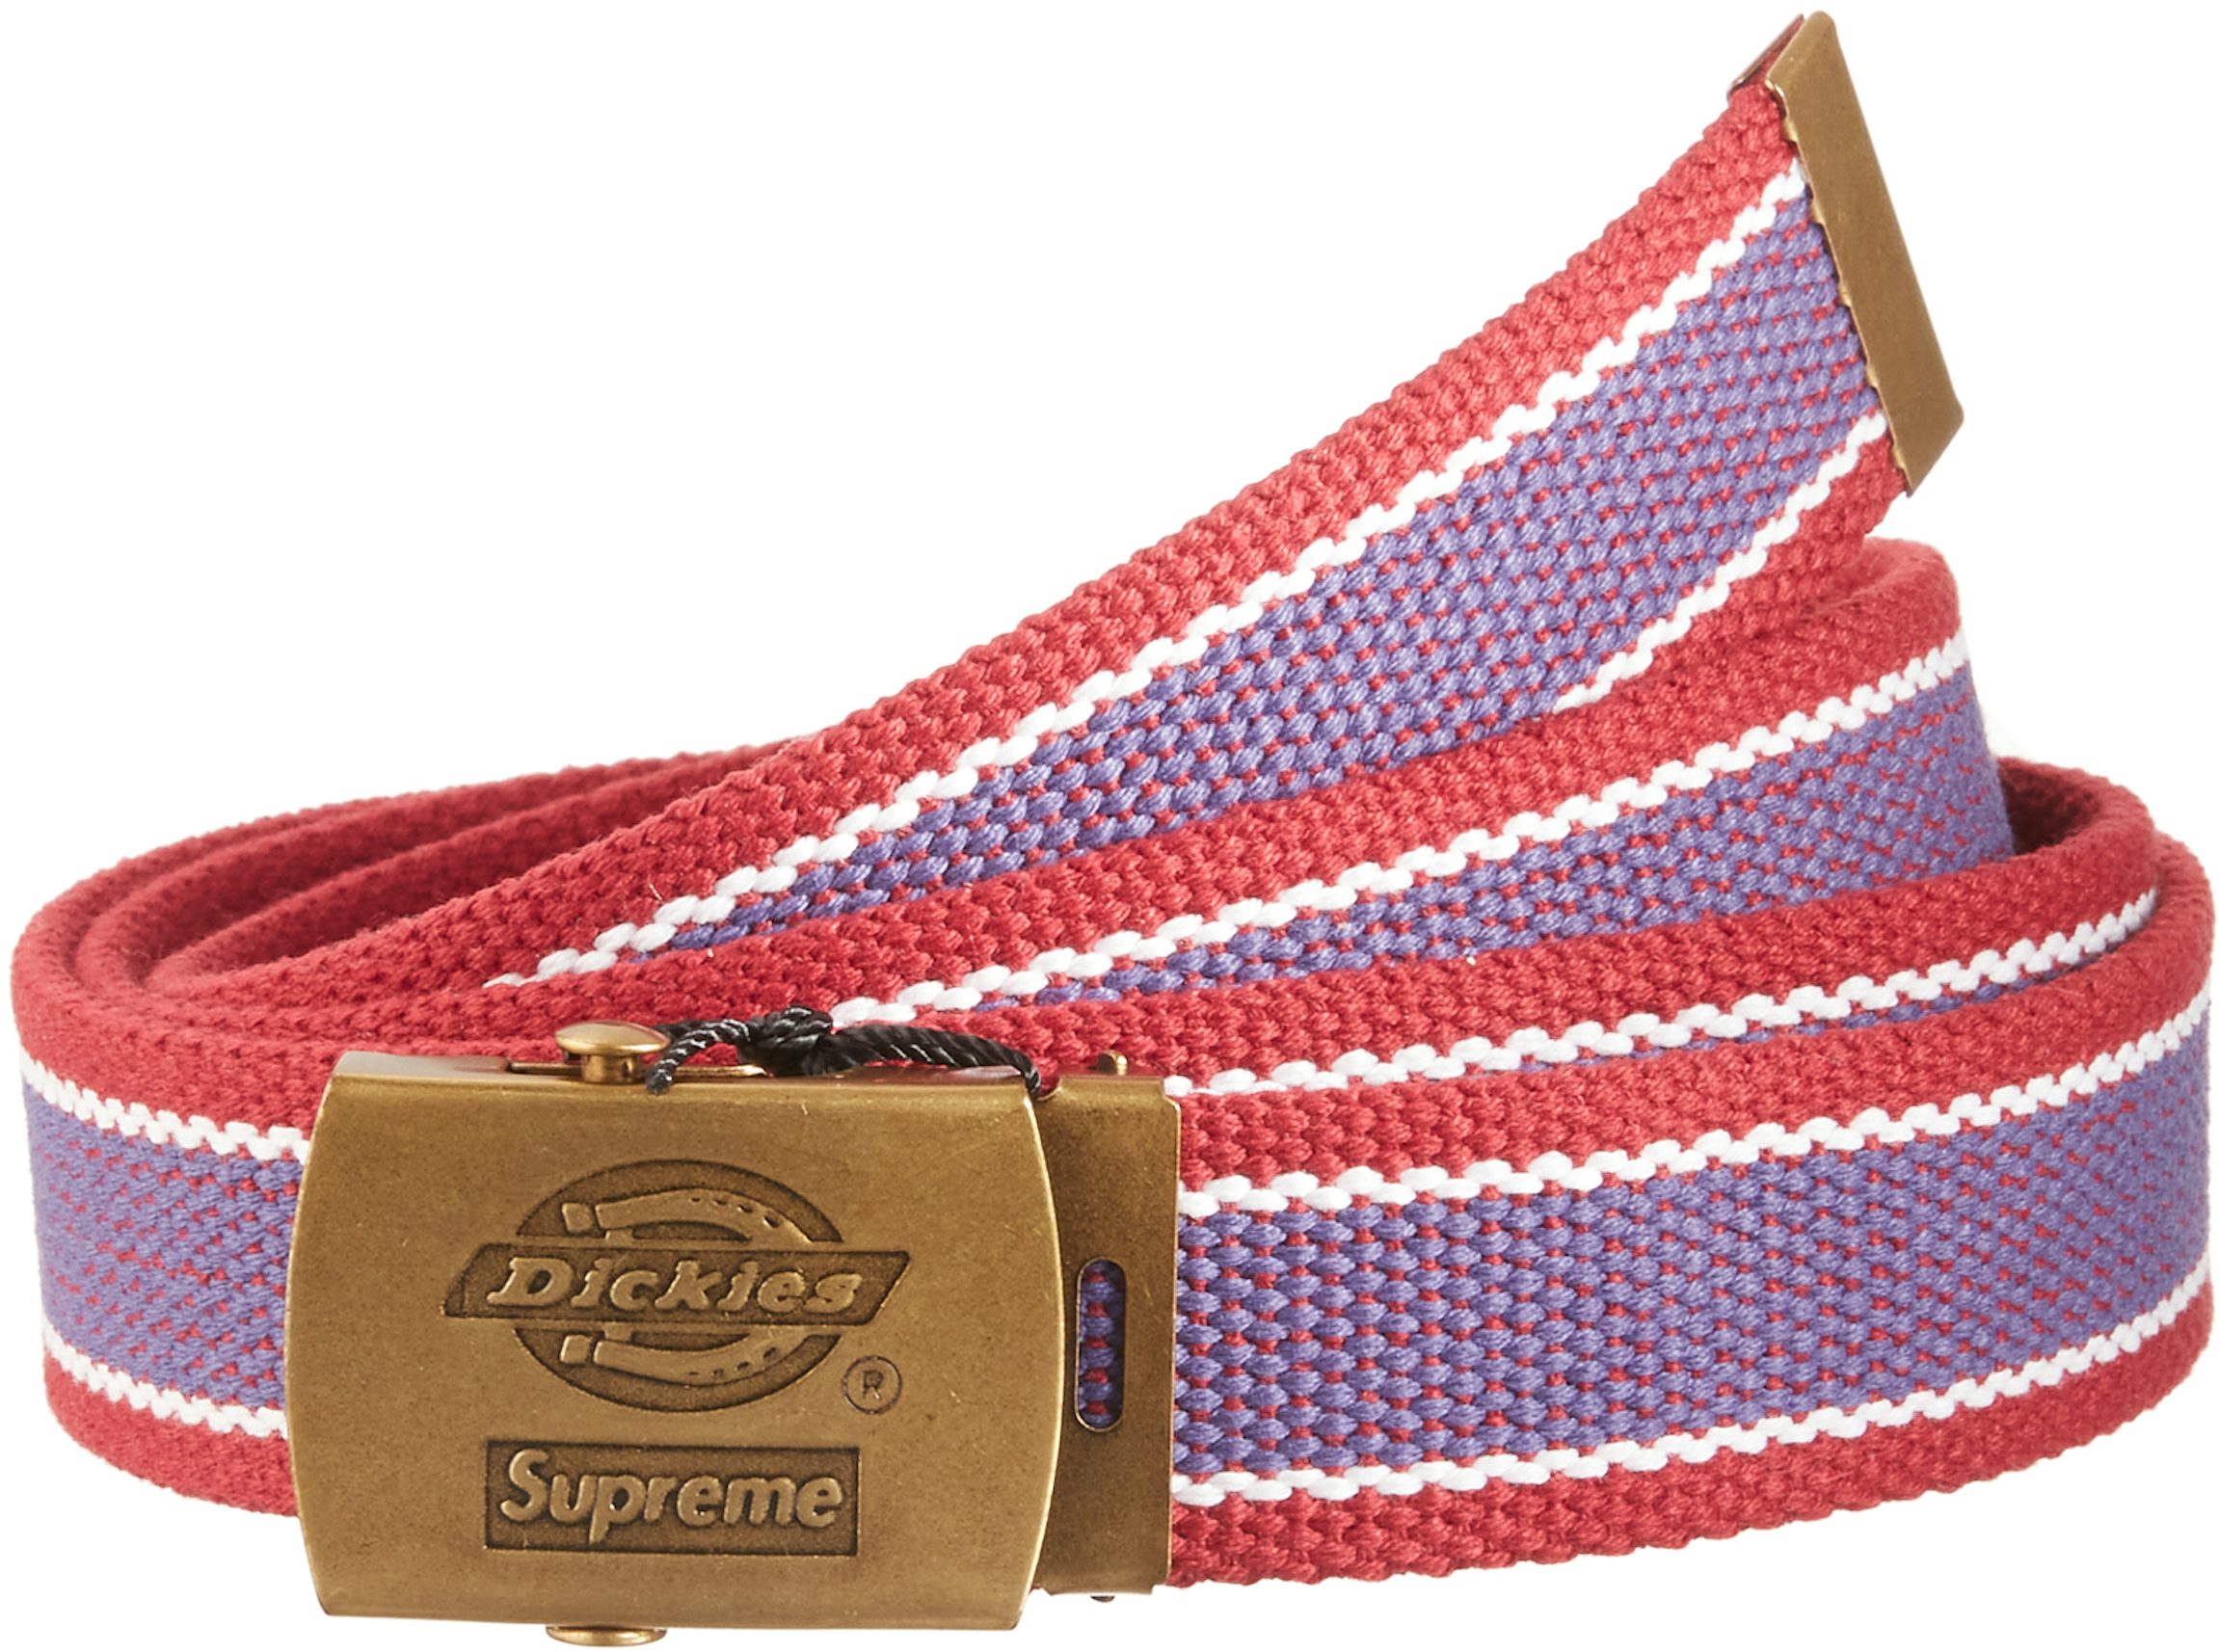 Supreme/Dickies Stripe Webbing Belt –